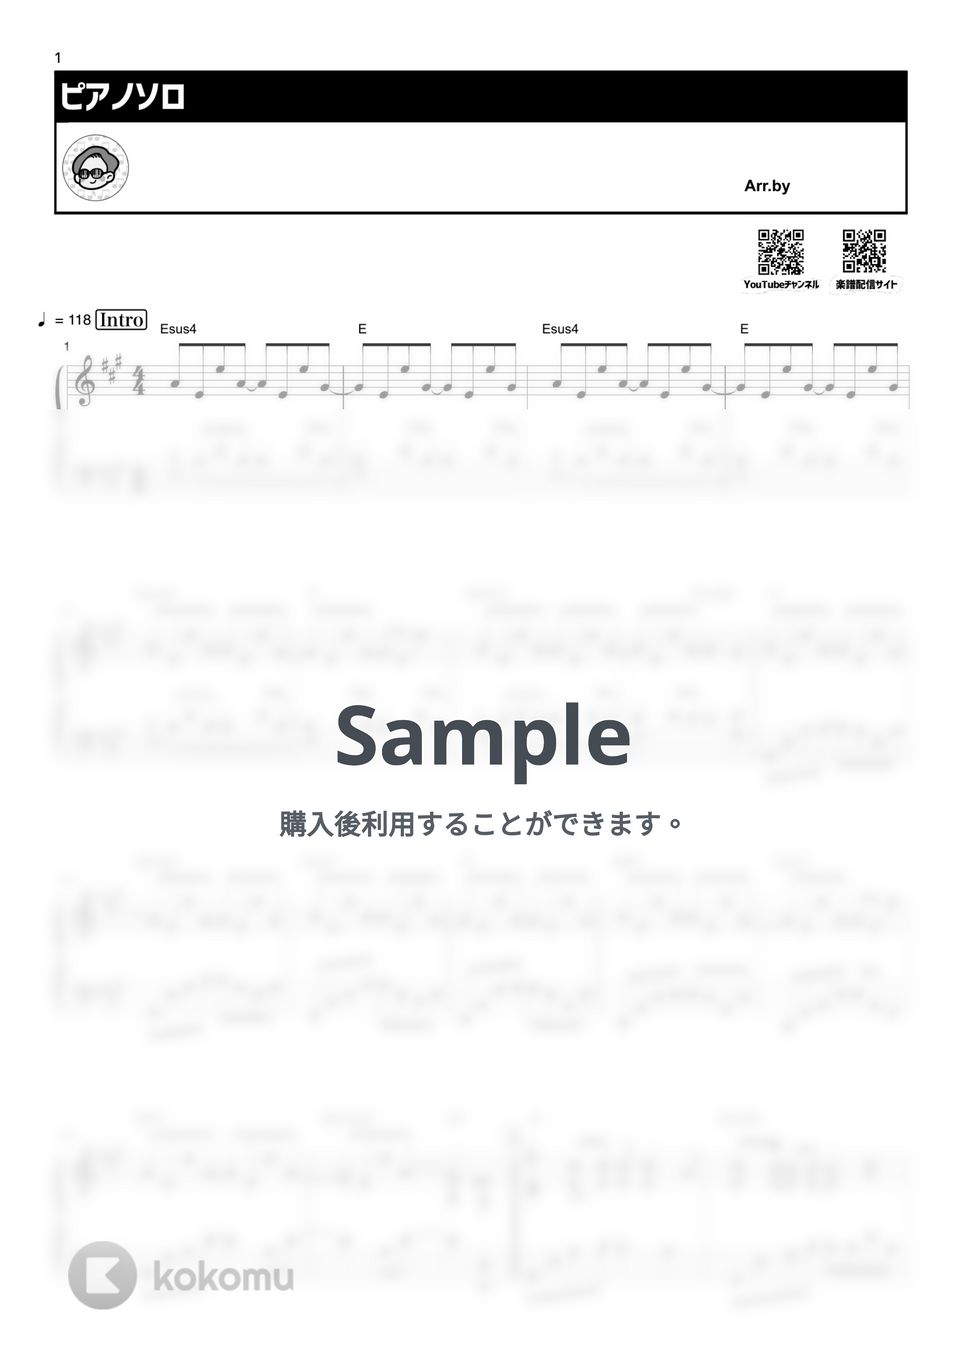 山下達郎 - クリスマス・イブ by シータピアノ